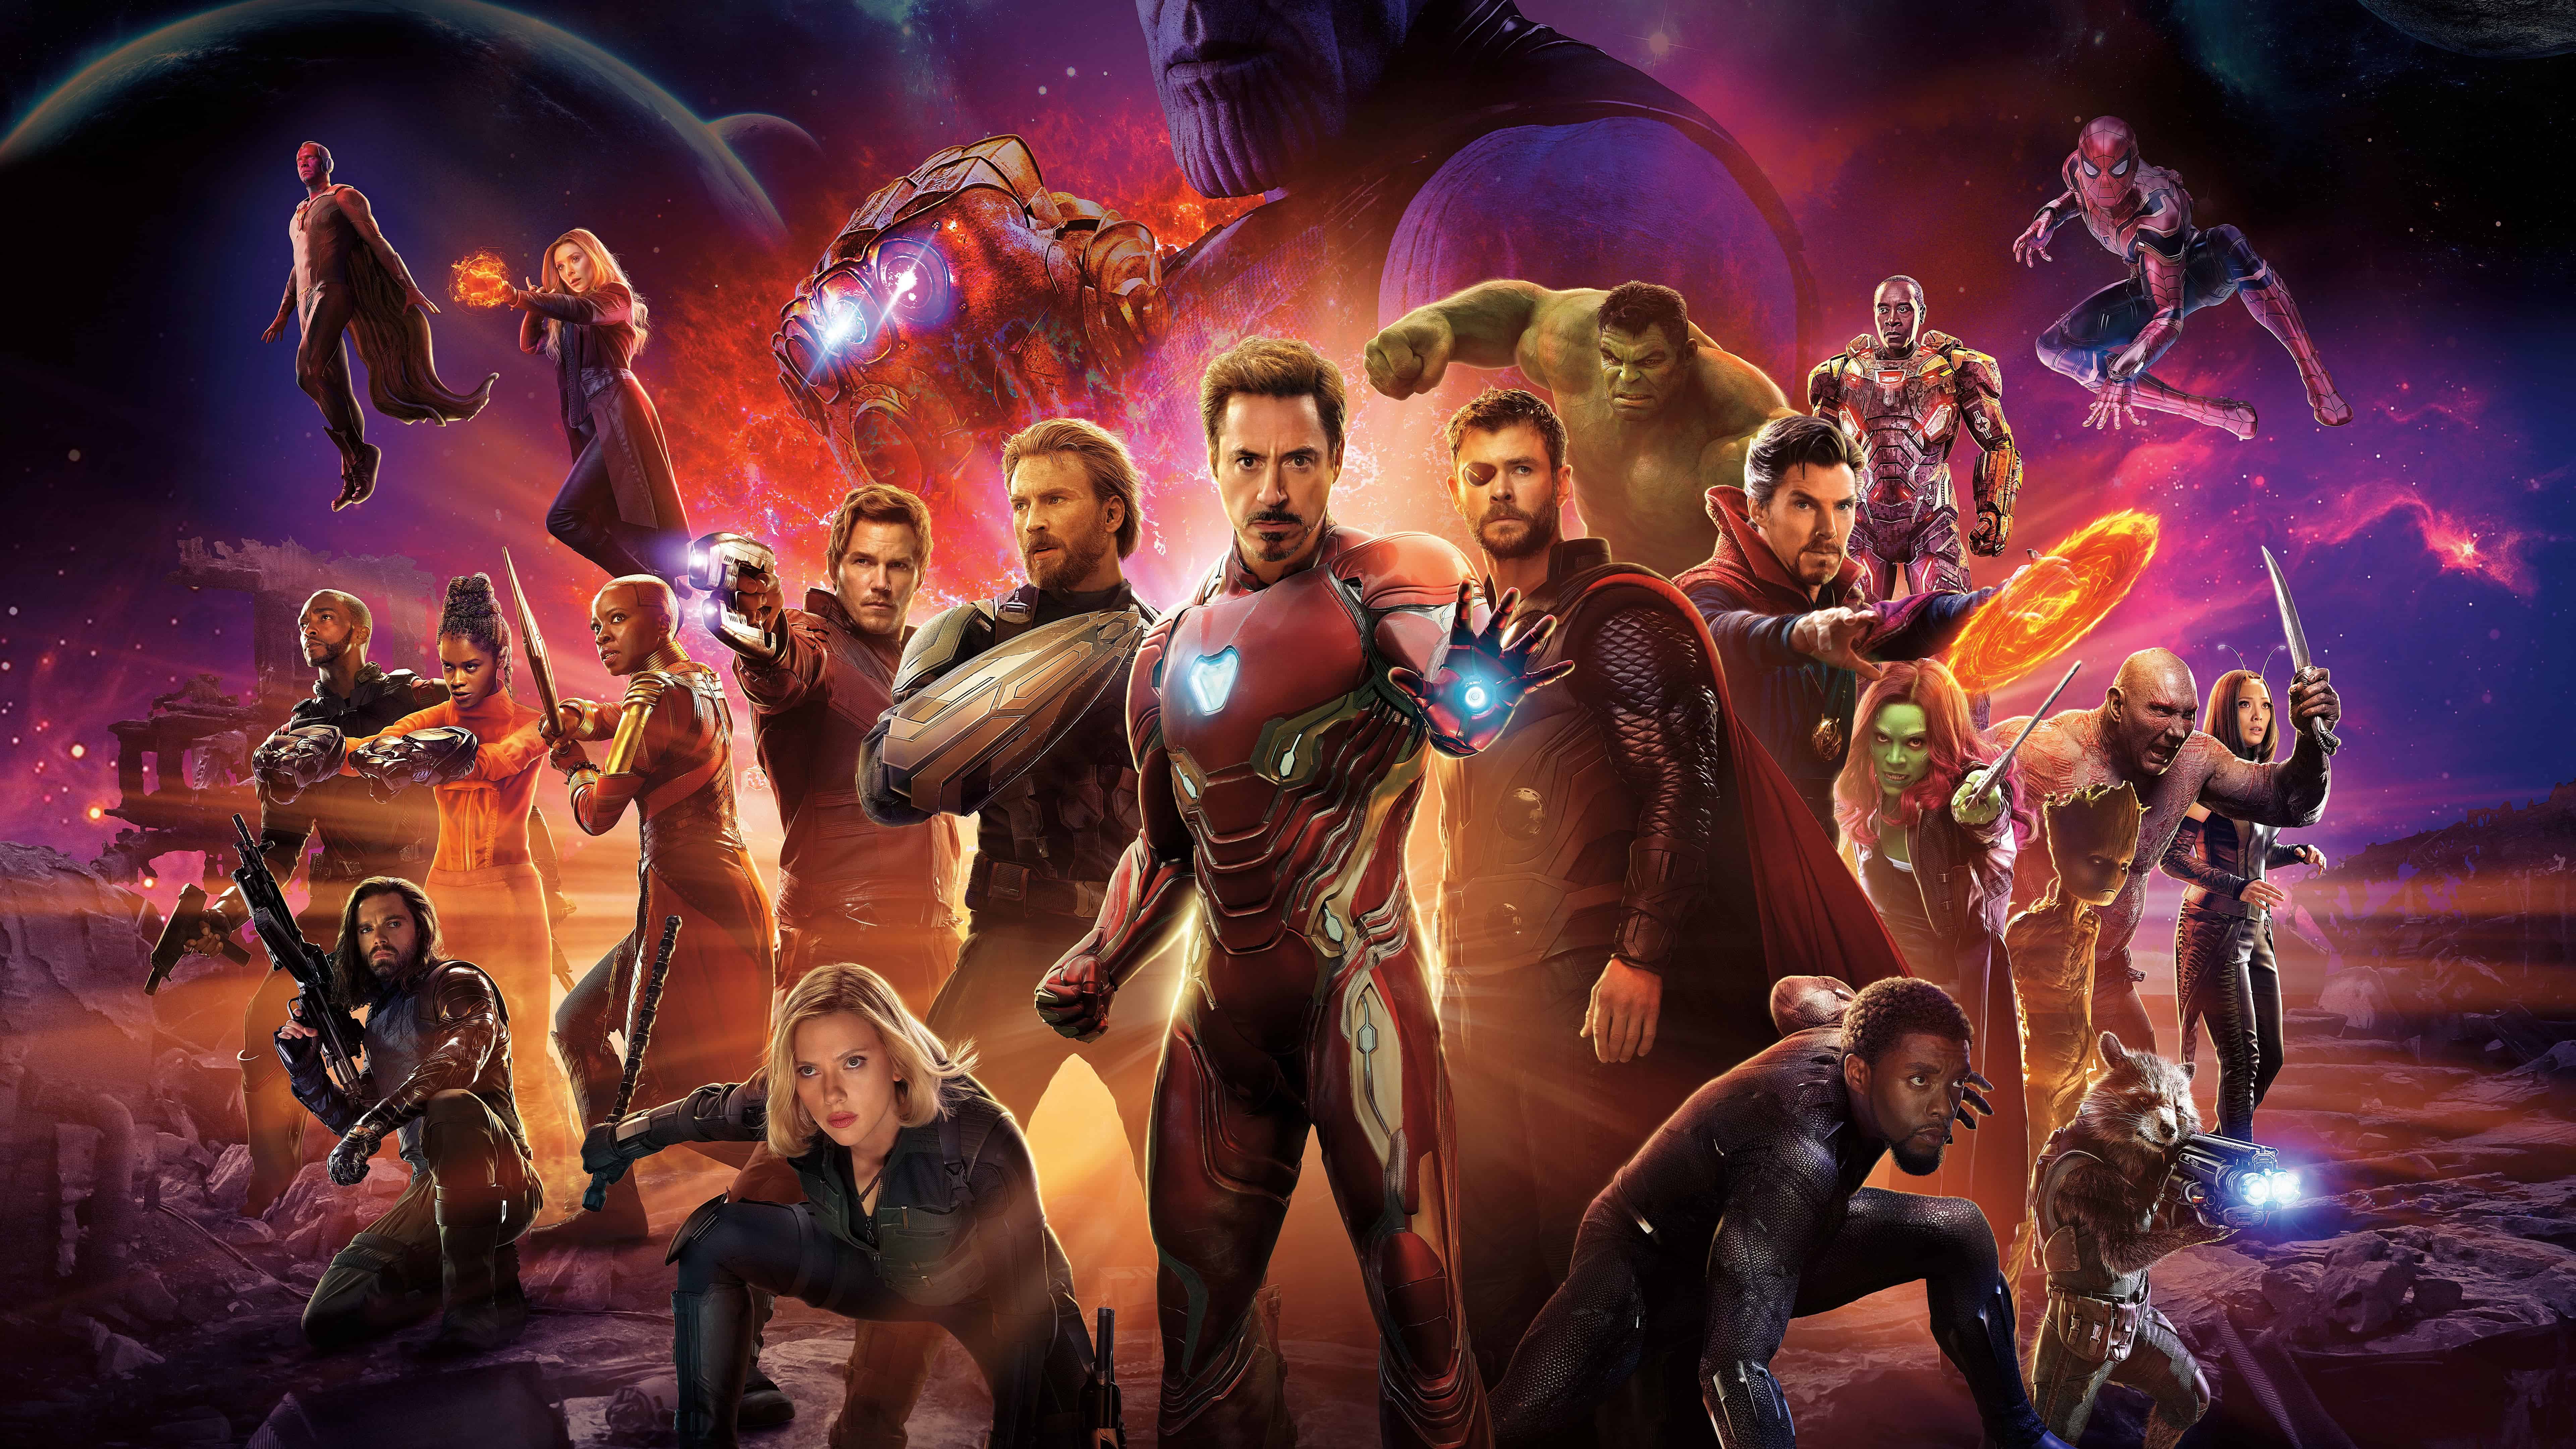 7680x4320 Hình nền Avengers Hình nền Avengers cho Android Apk - Avengers